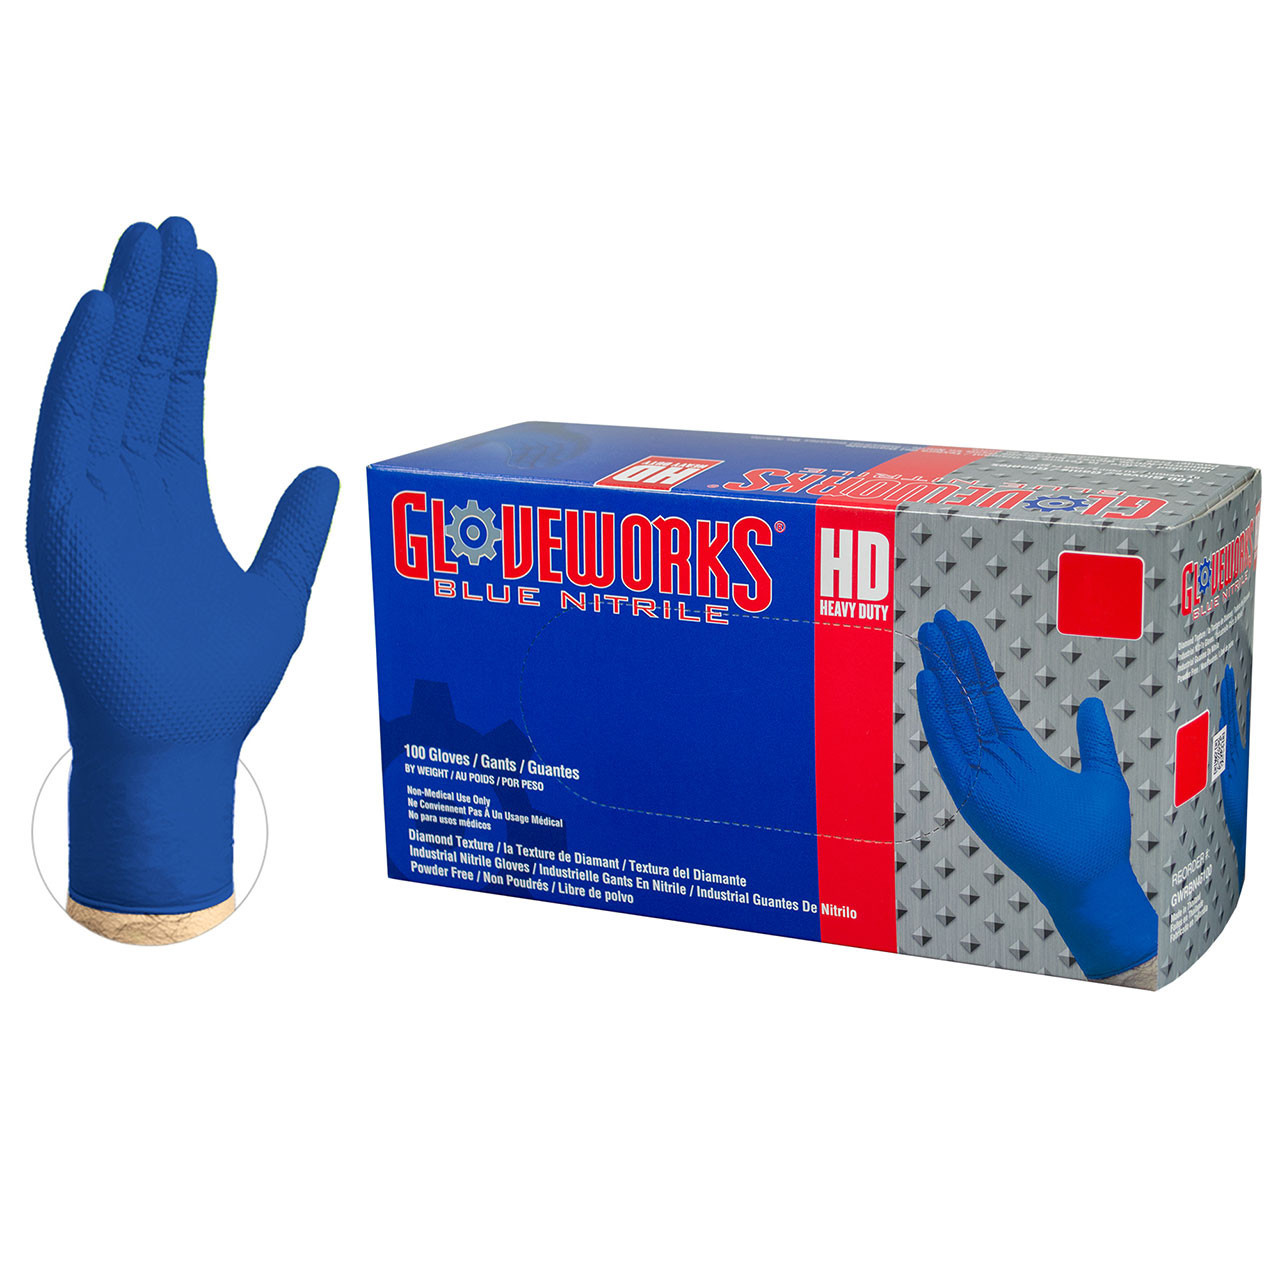 LAB-06 Gloves